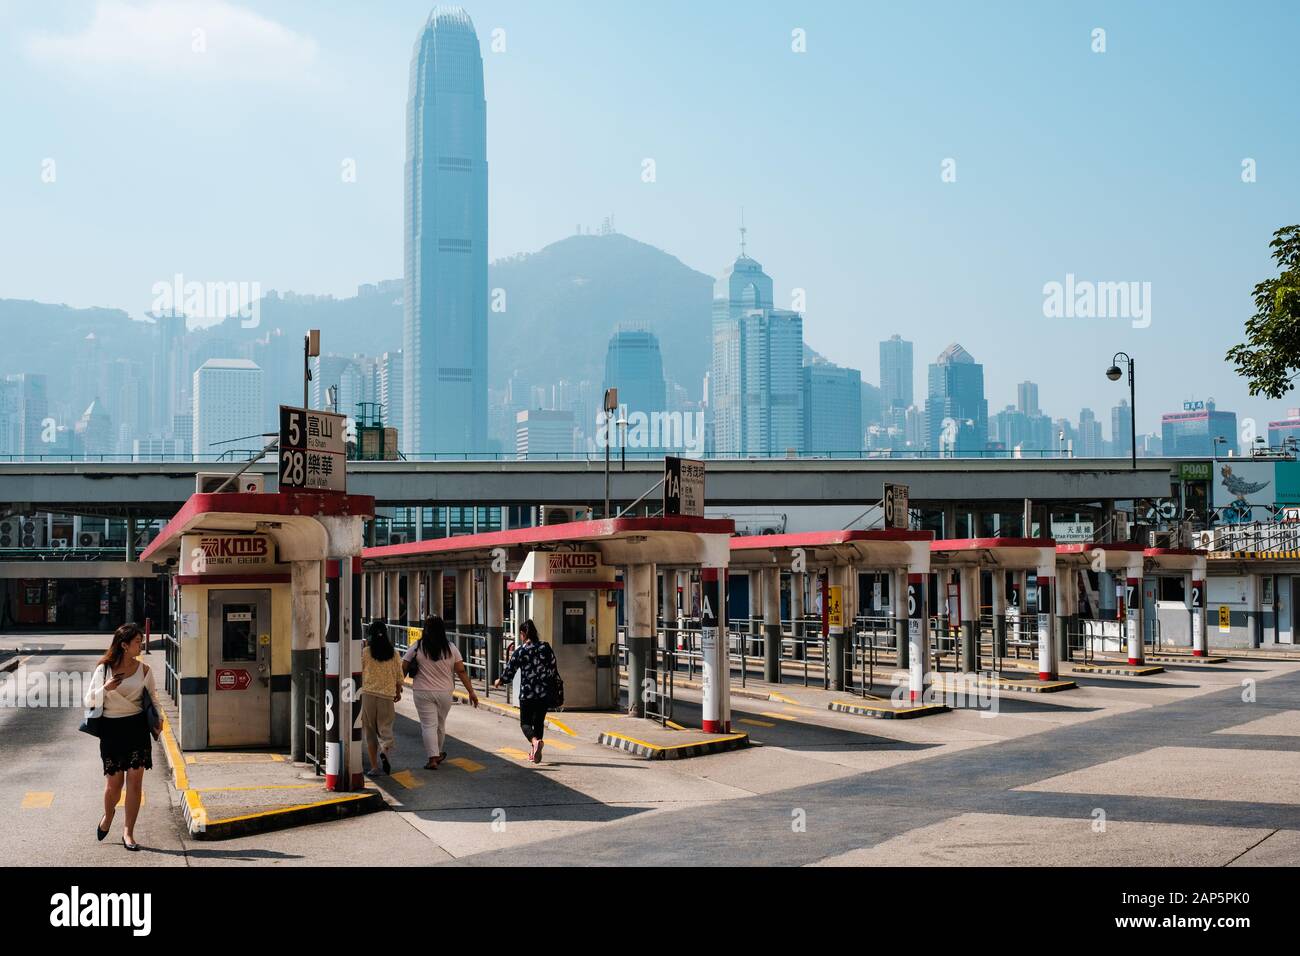 HongKong, China - November, 2019: Tsim Sha Tsui Bus terminal and skyline of Hong Kong Stock Photo